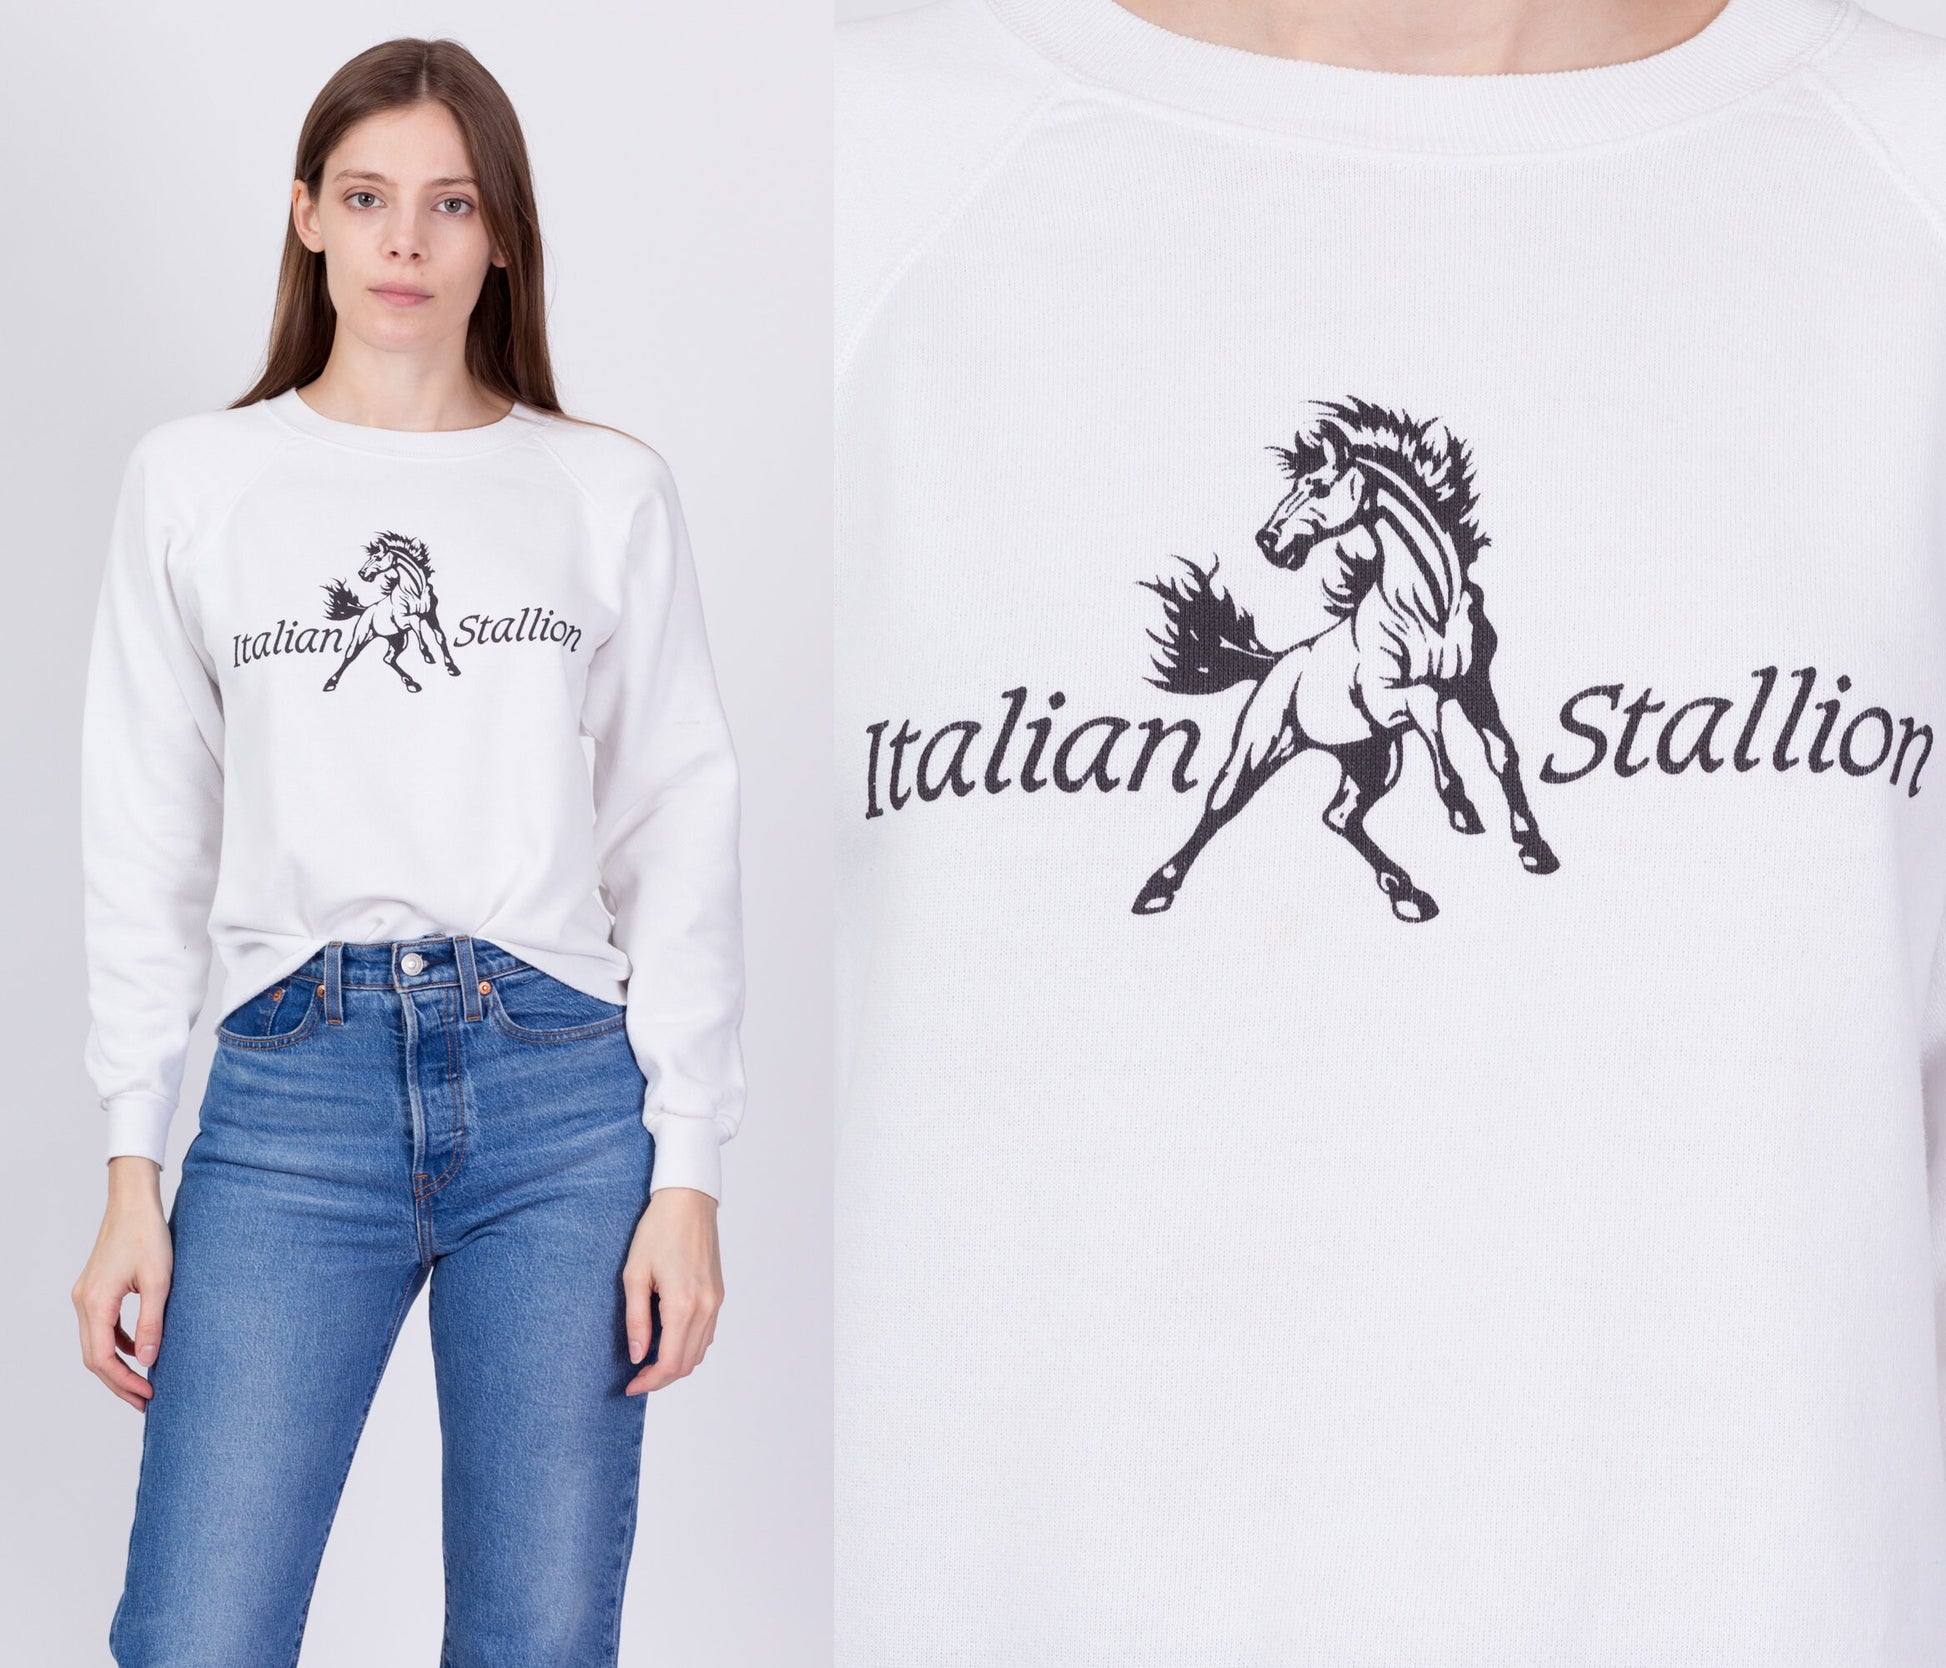 90s Italian Stallion Sweatshirt - Small to Medium 